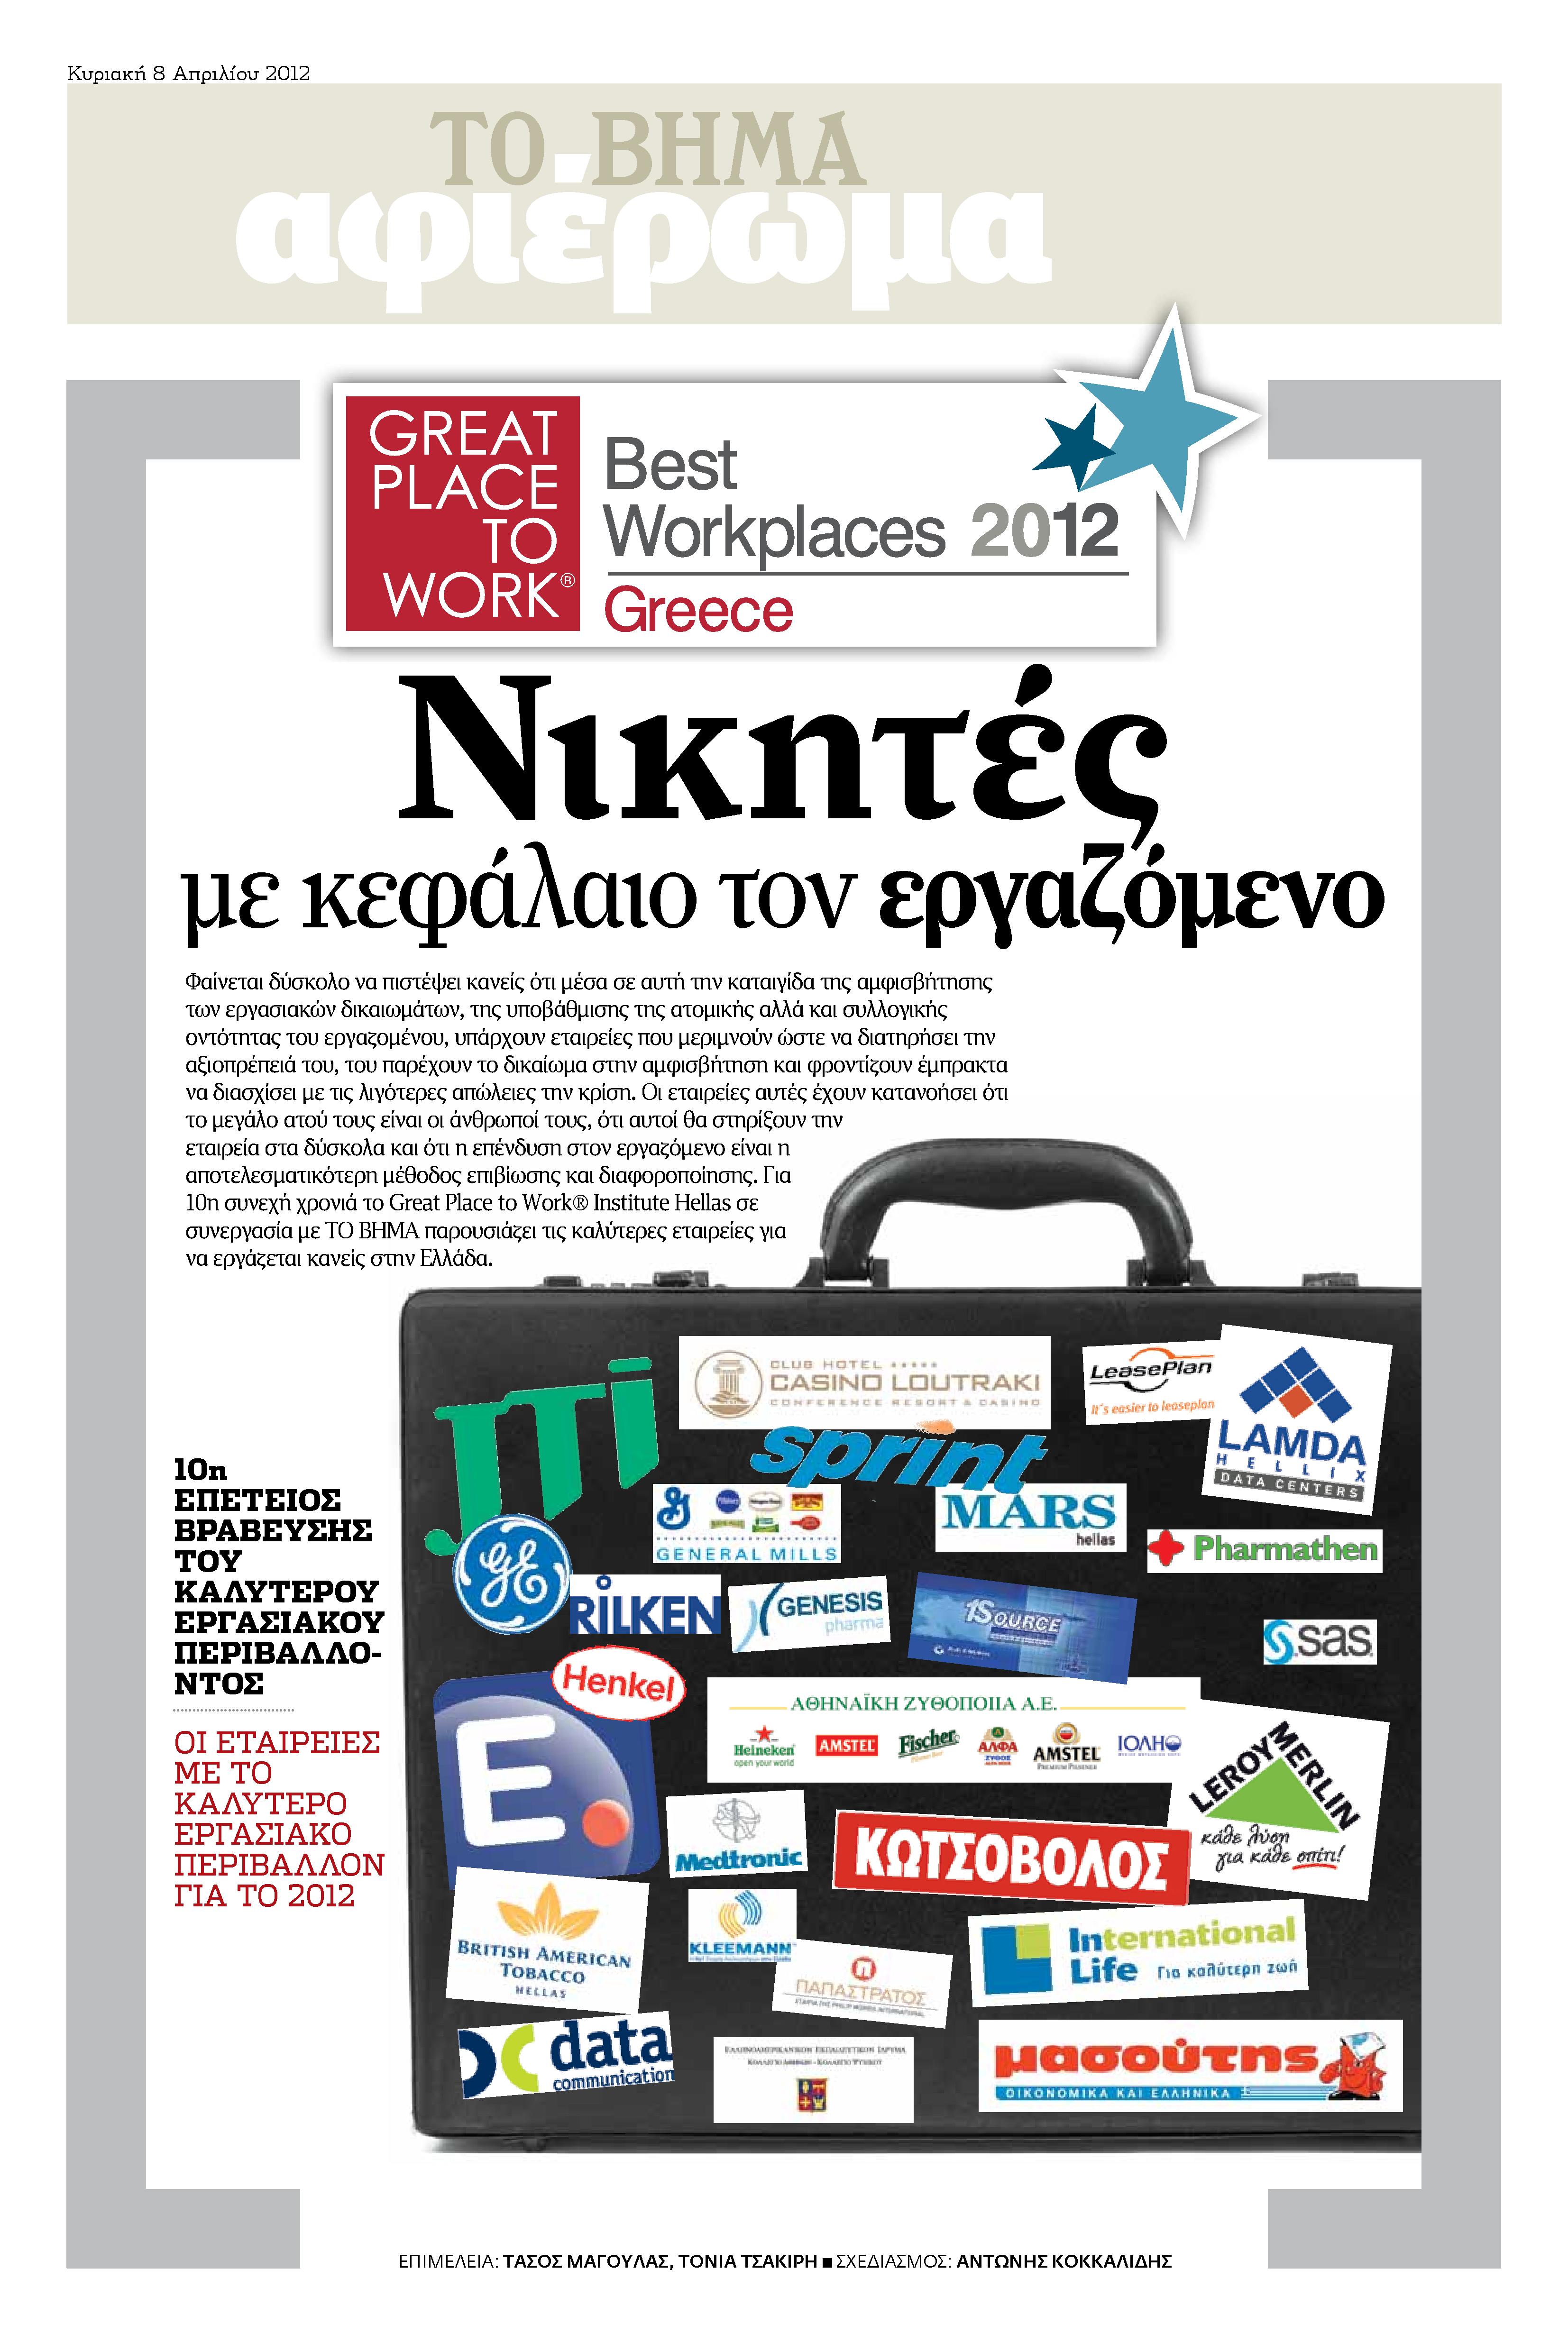 Πέντε εταιρείες από την Ελλάδα στα Best Workplaces της Ευρώπης